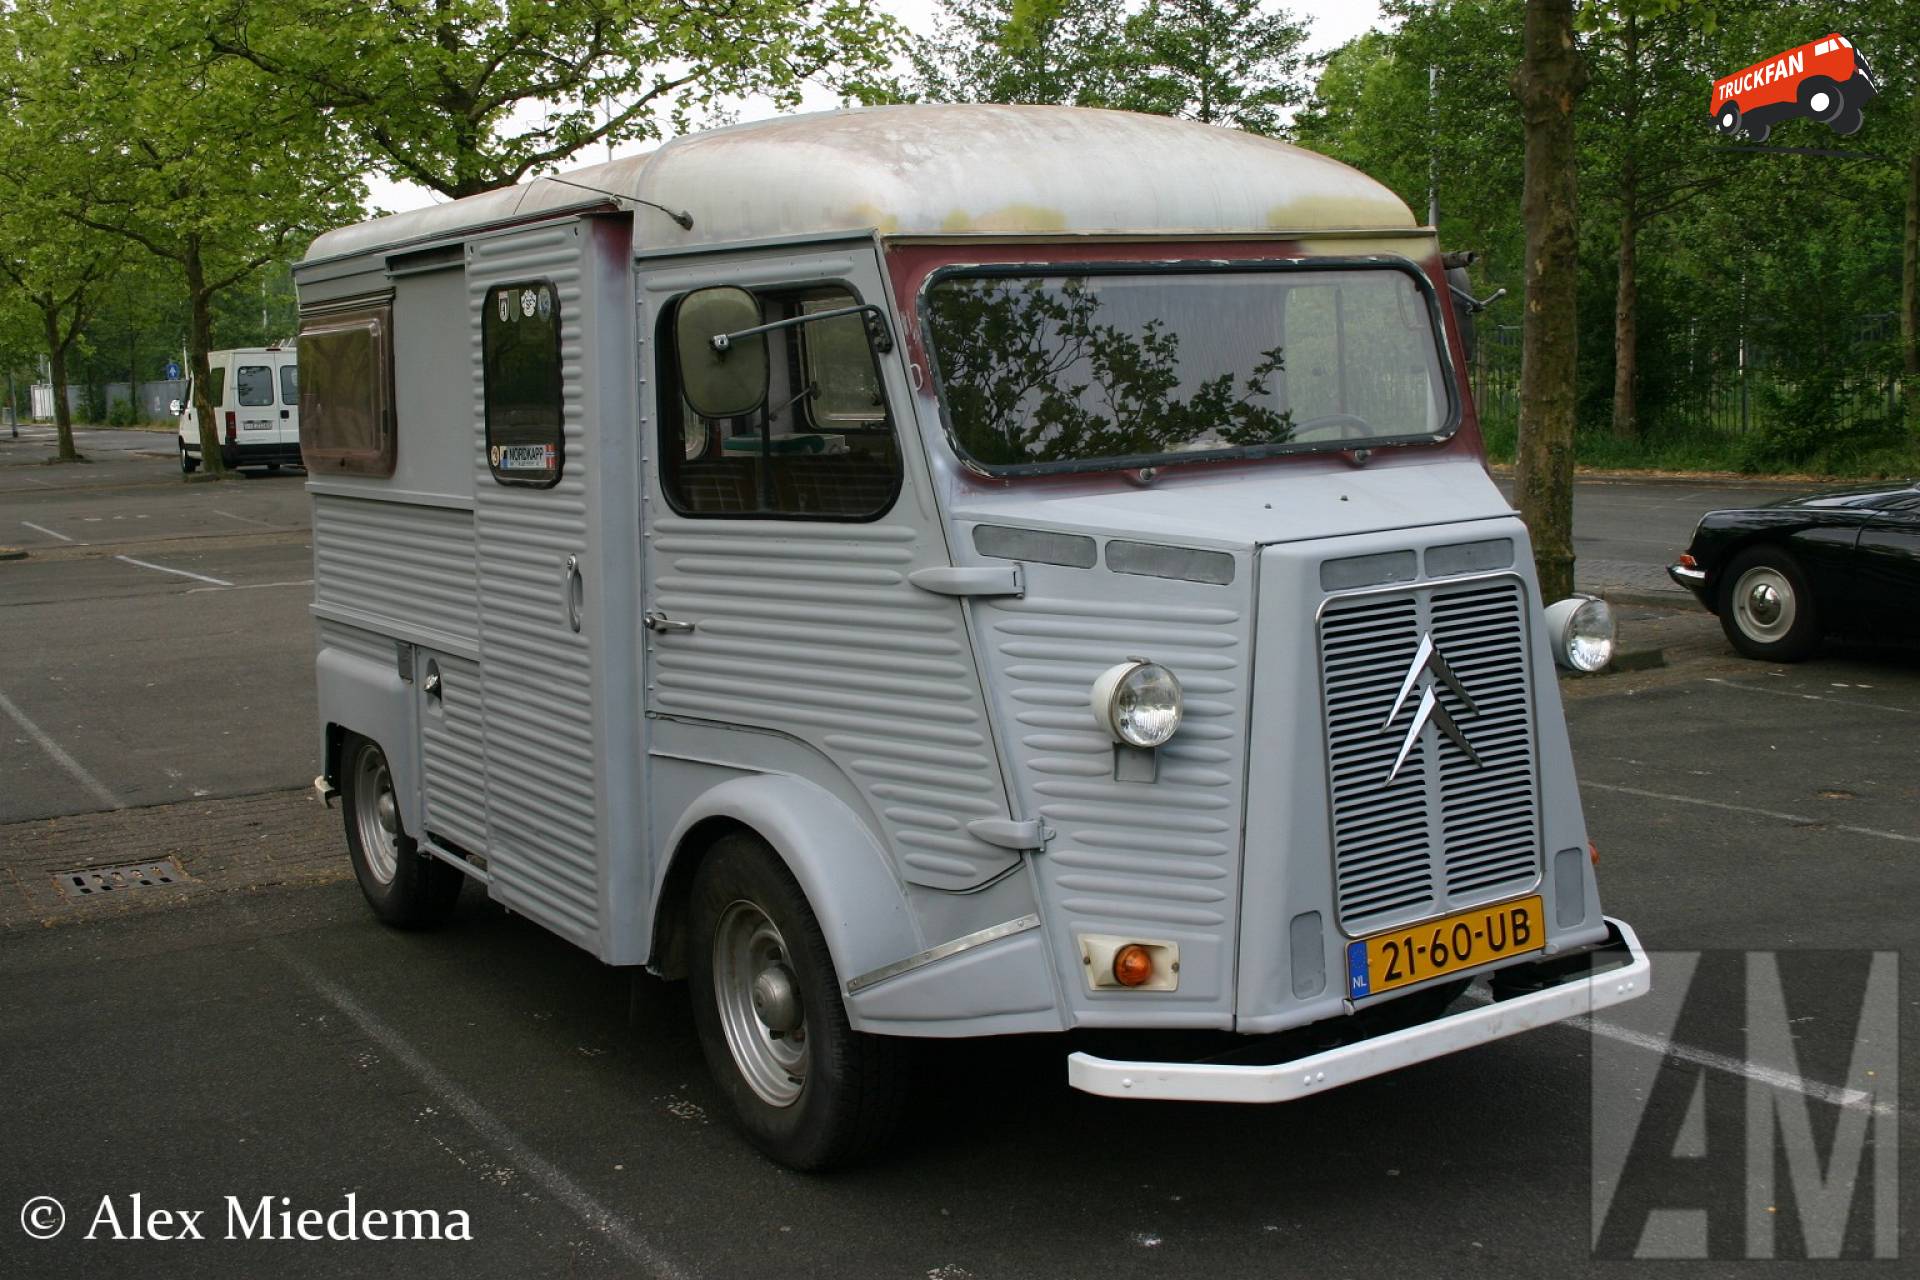 Citroën HY